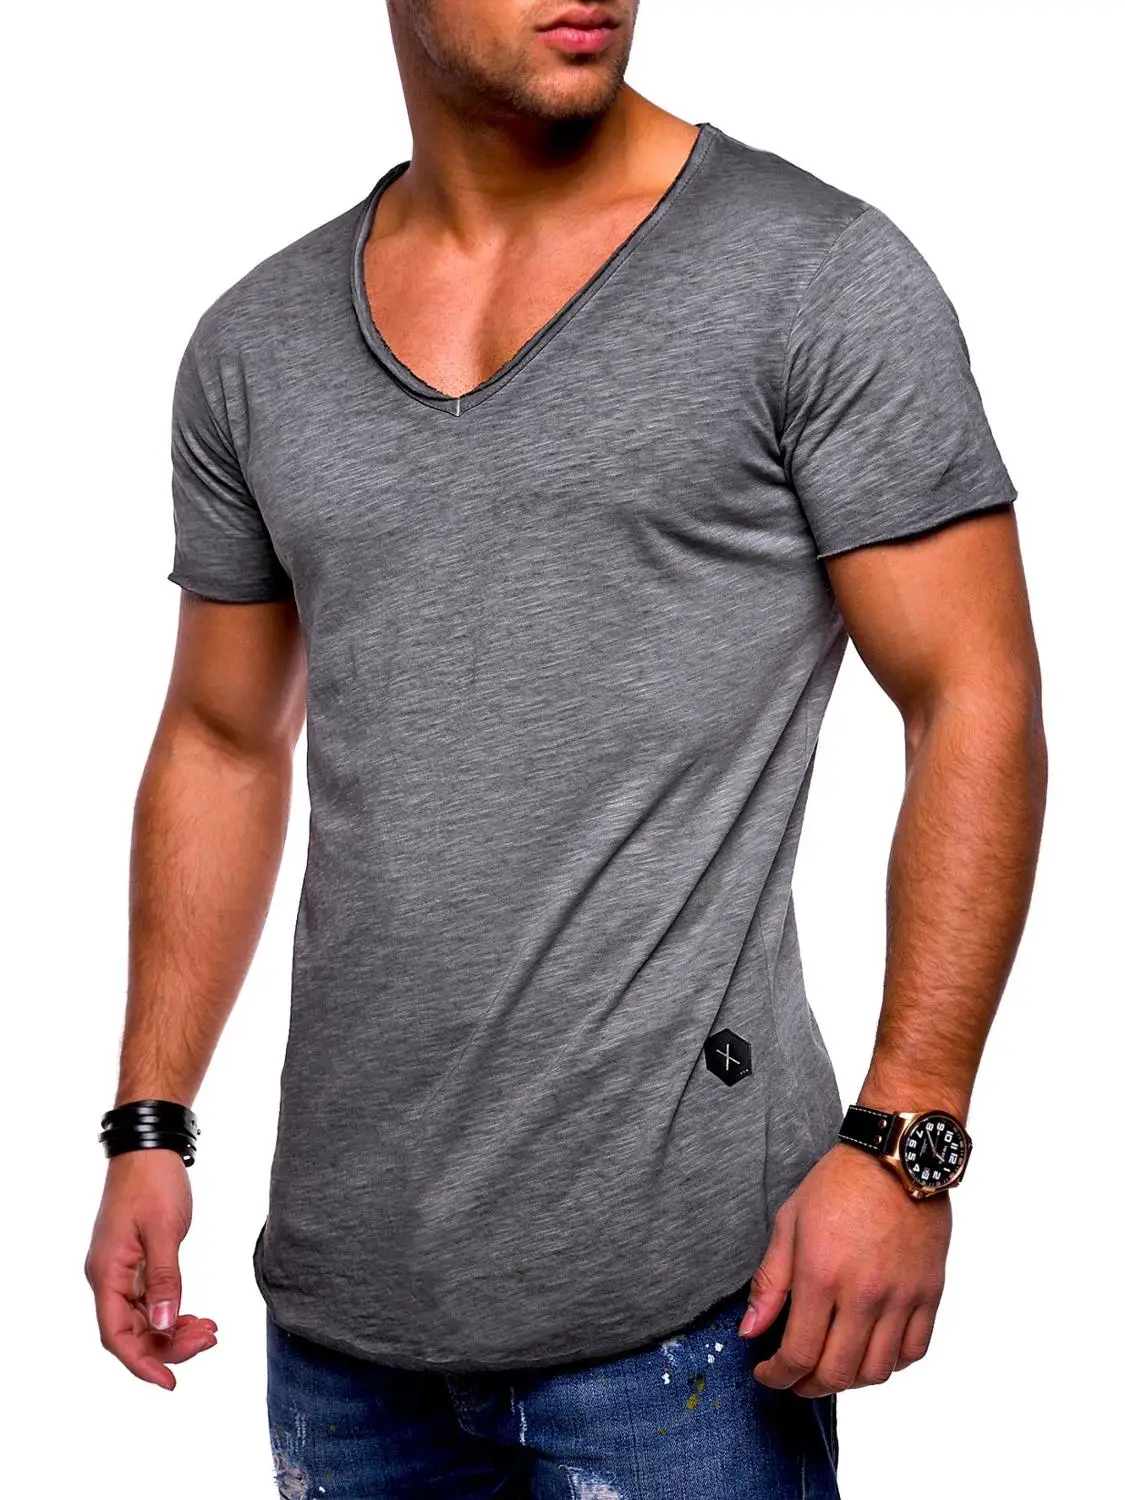 men's t-shirt  explosion models large size men's V-neck stretch solid color short sleeve youth base shirt factory direct vest images - 6